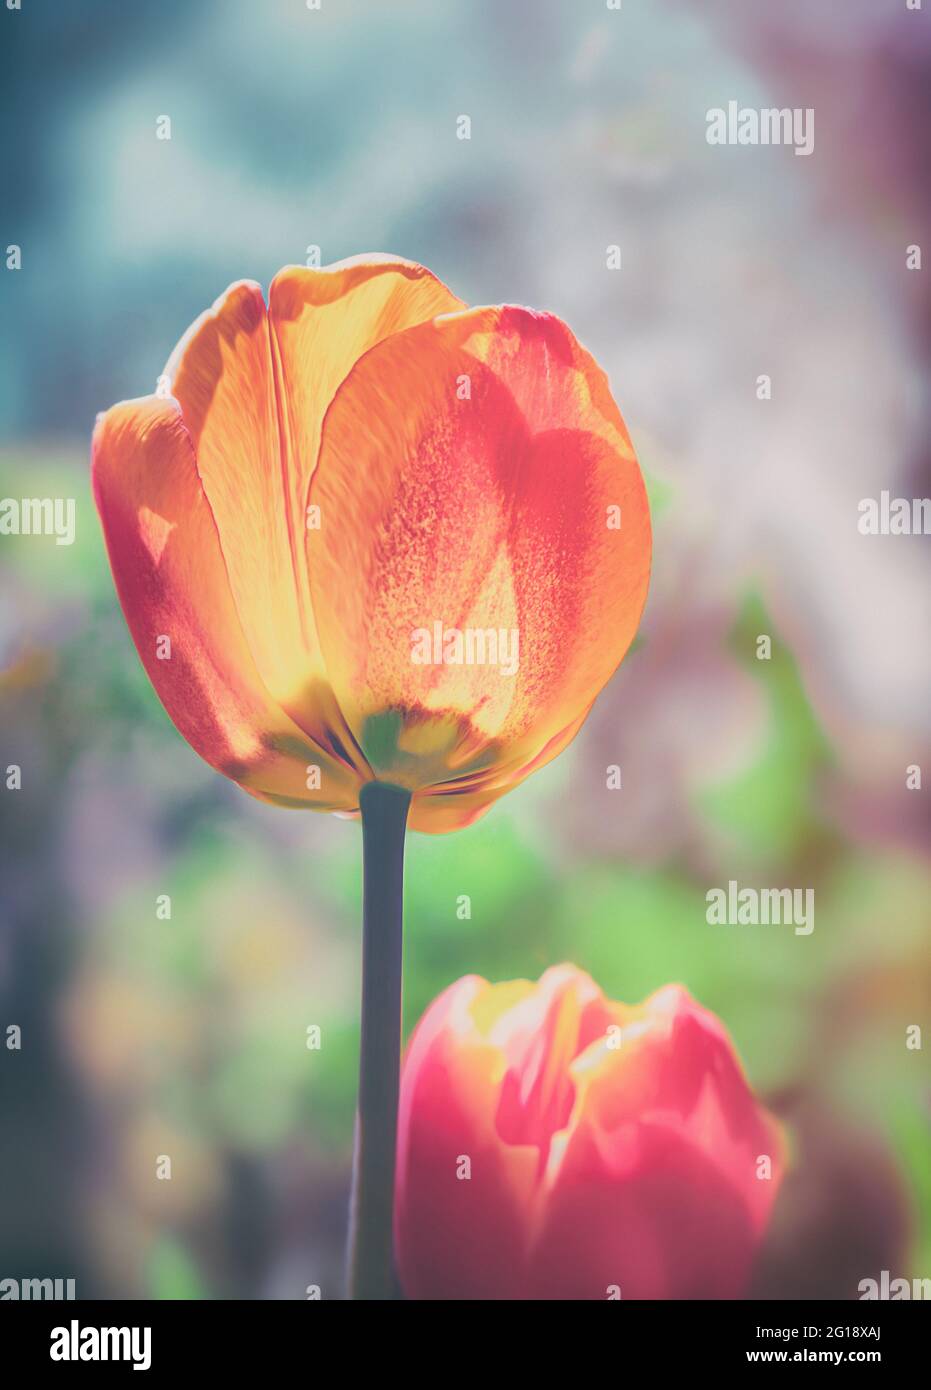 Stimmungsvolles Nahaufnahme einer Tulpe im farbenfrohes Blumenmeer aus Tulpen im Grugapark Essen - Blüten im Licht und Sonnenschein im Park. Stock Photo